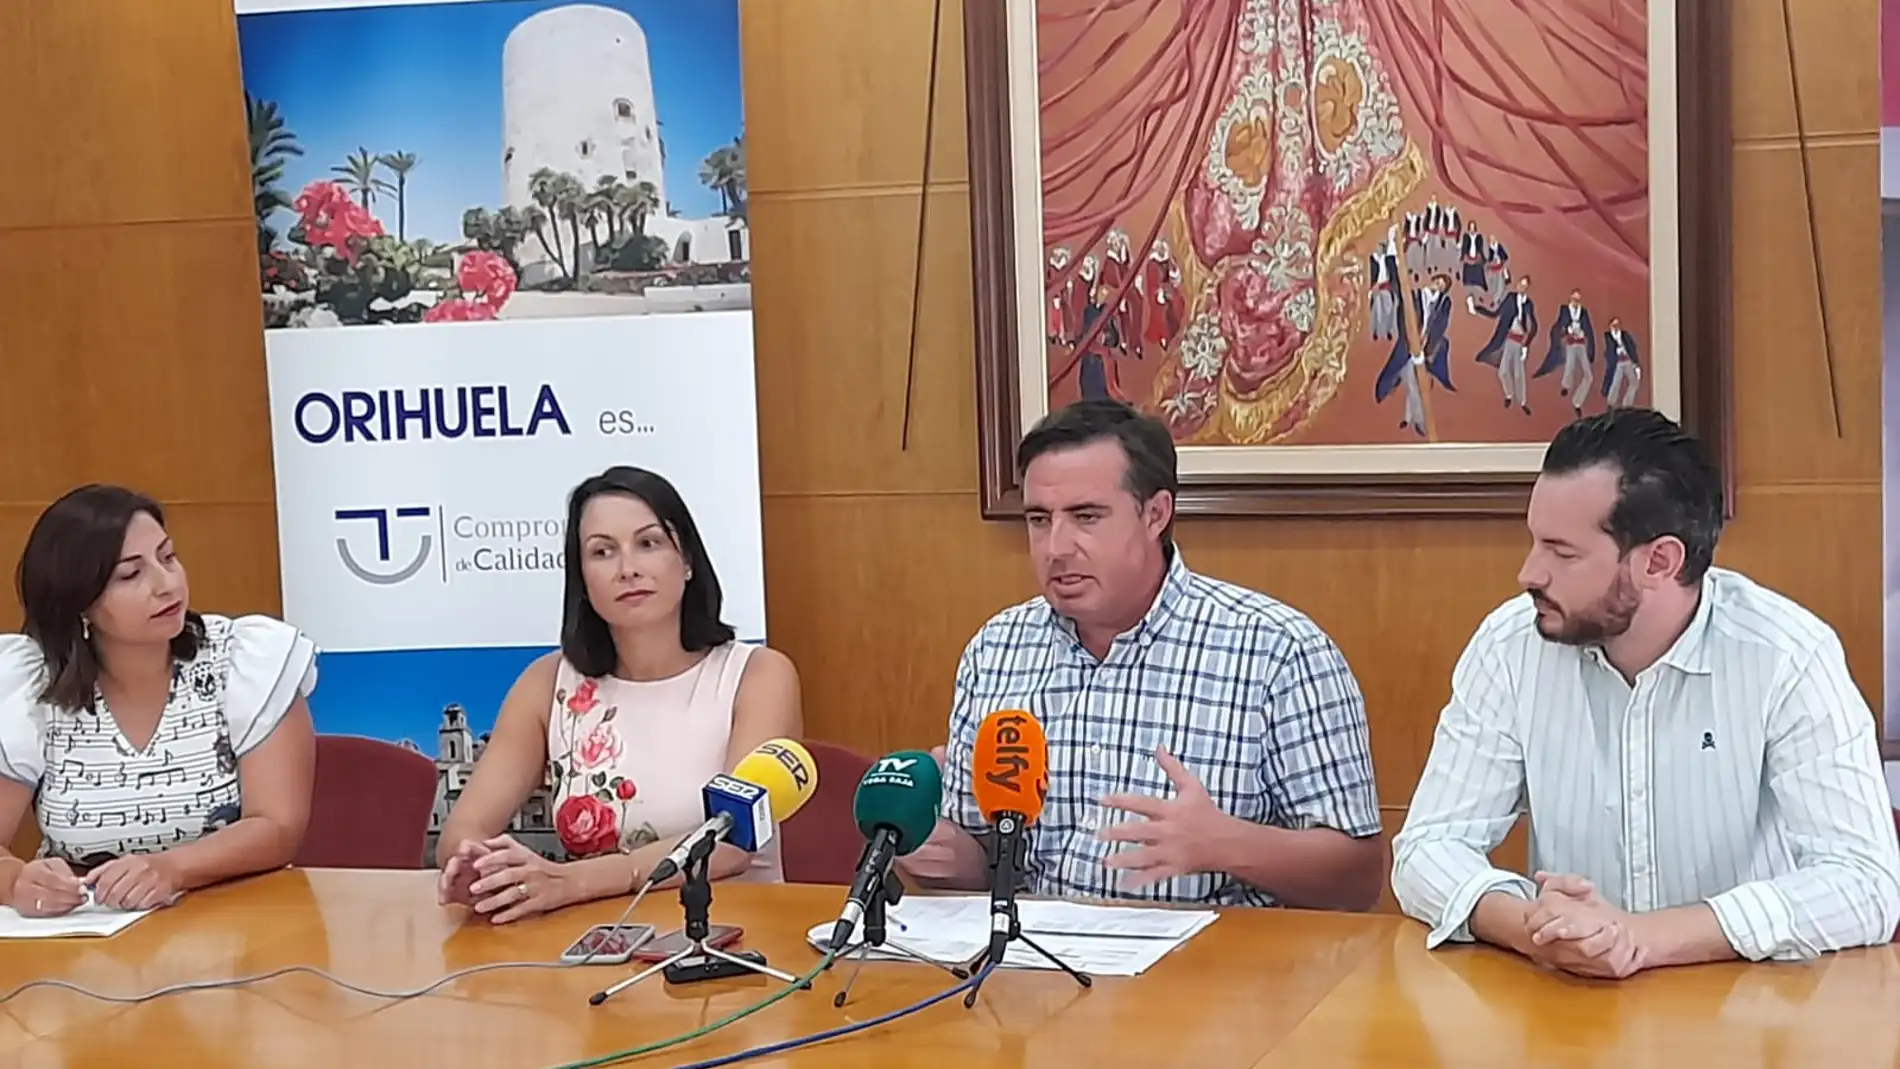 Turisme CV destina 111.000 en 2022 a Orihuela a través del Fondo de Cooperación Municipal